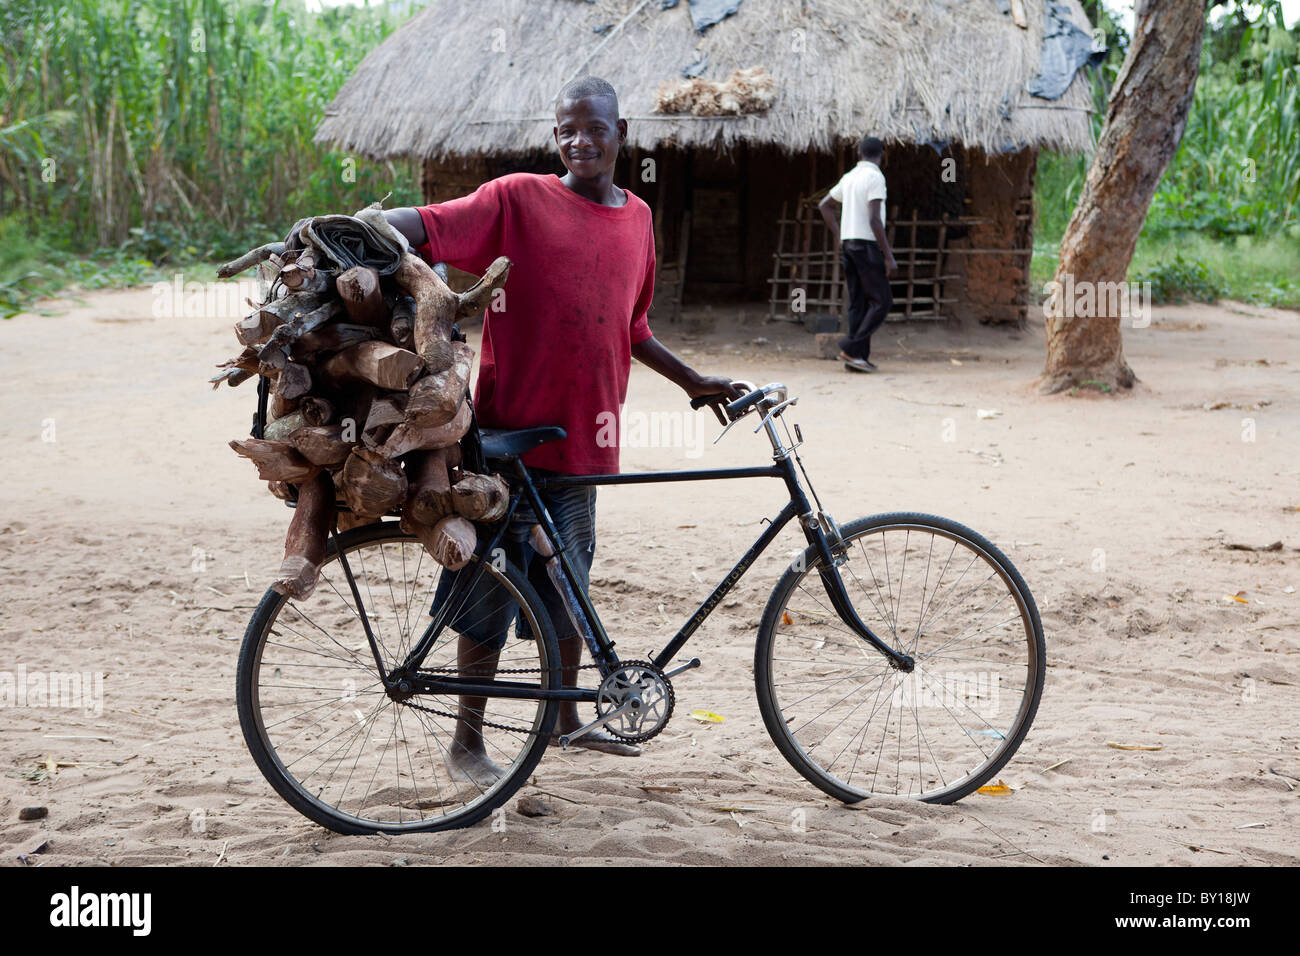 VILLAGE près de Nampula, MOZAMBIQUE, Mai 2010 : apportant à la maison bois en vélo. Photo de Mike Goldwater Banque D'Images